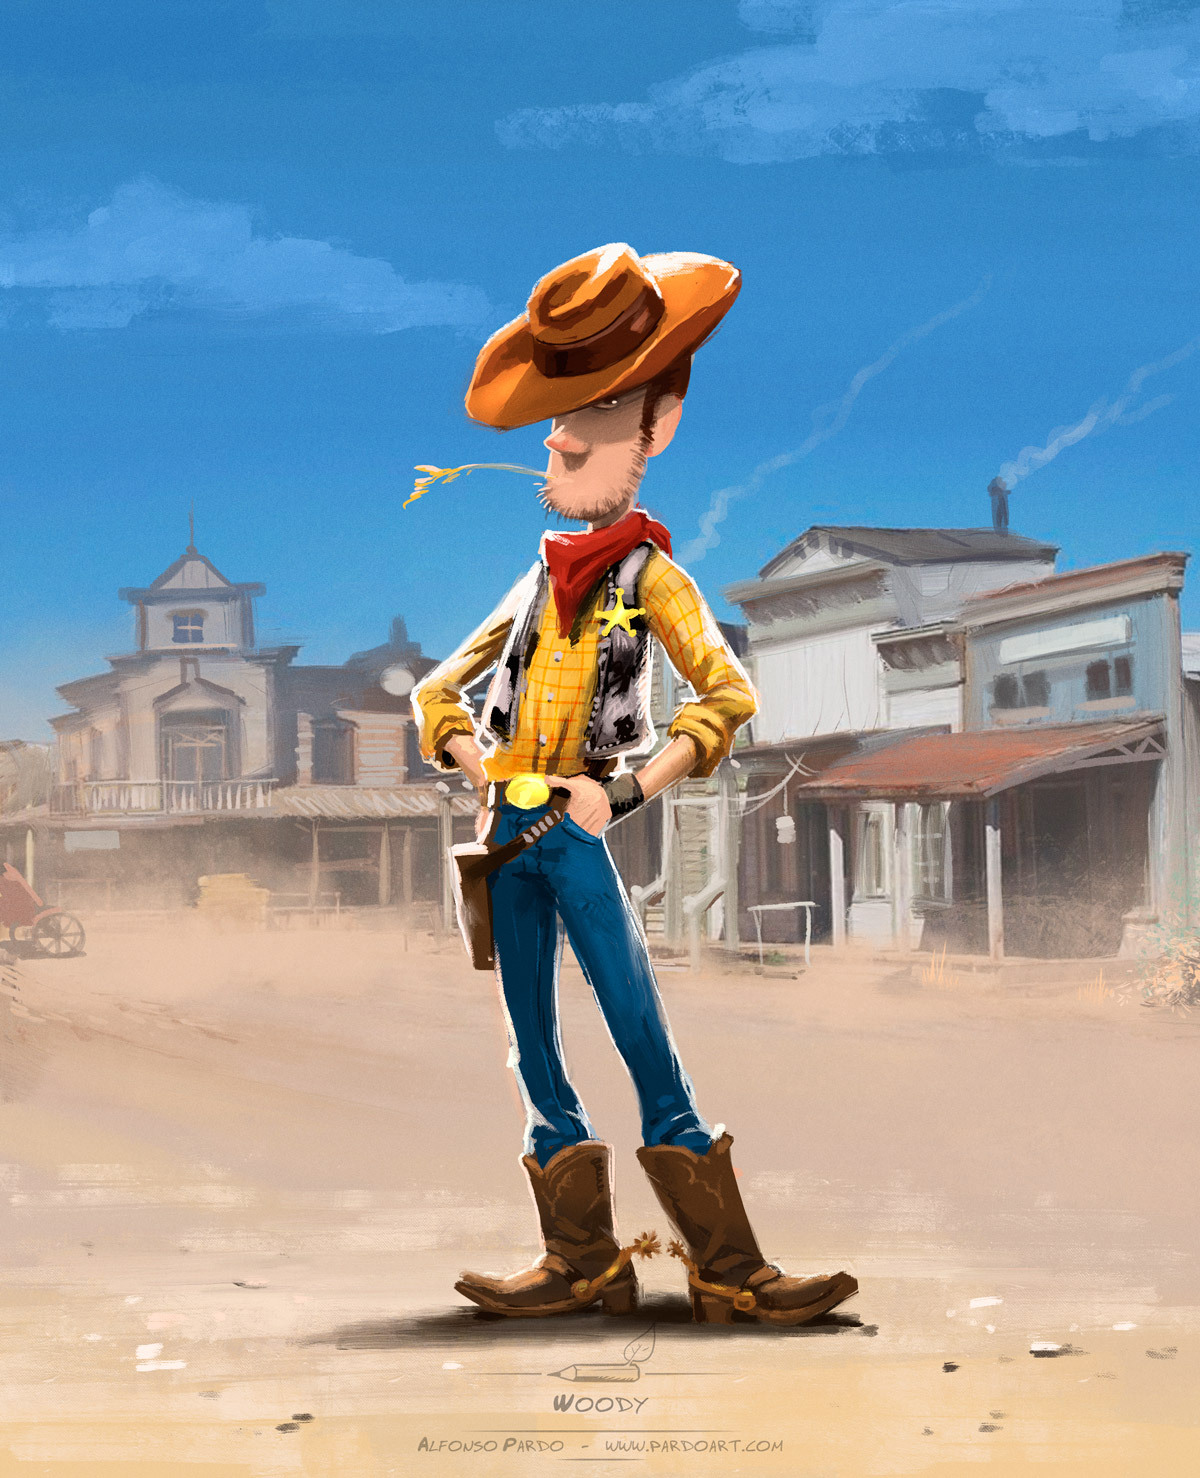 Pardoart is tumblring • Happy Birthday, Pixar. Here is my tribute… Woody...